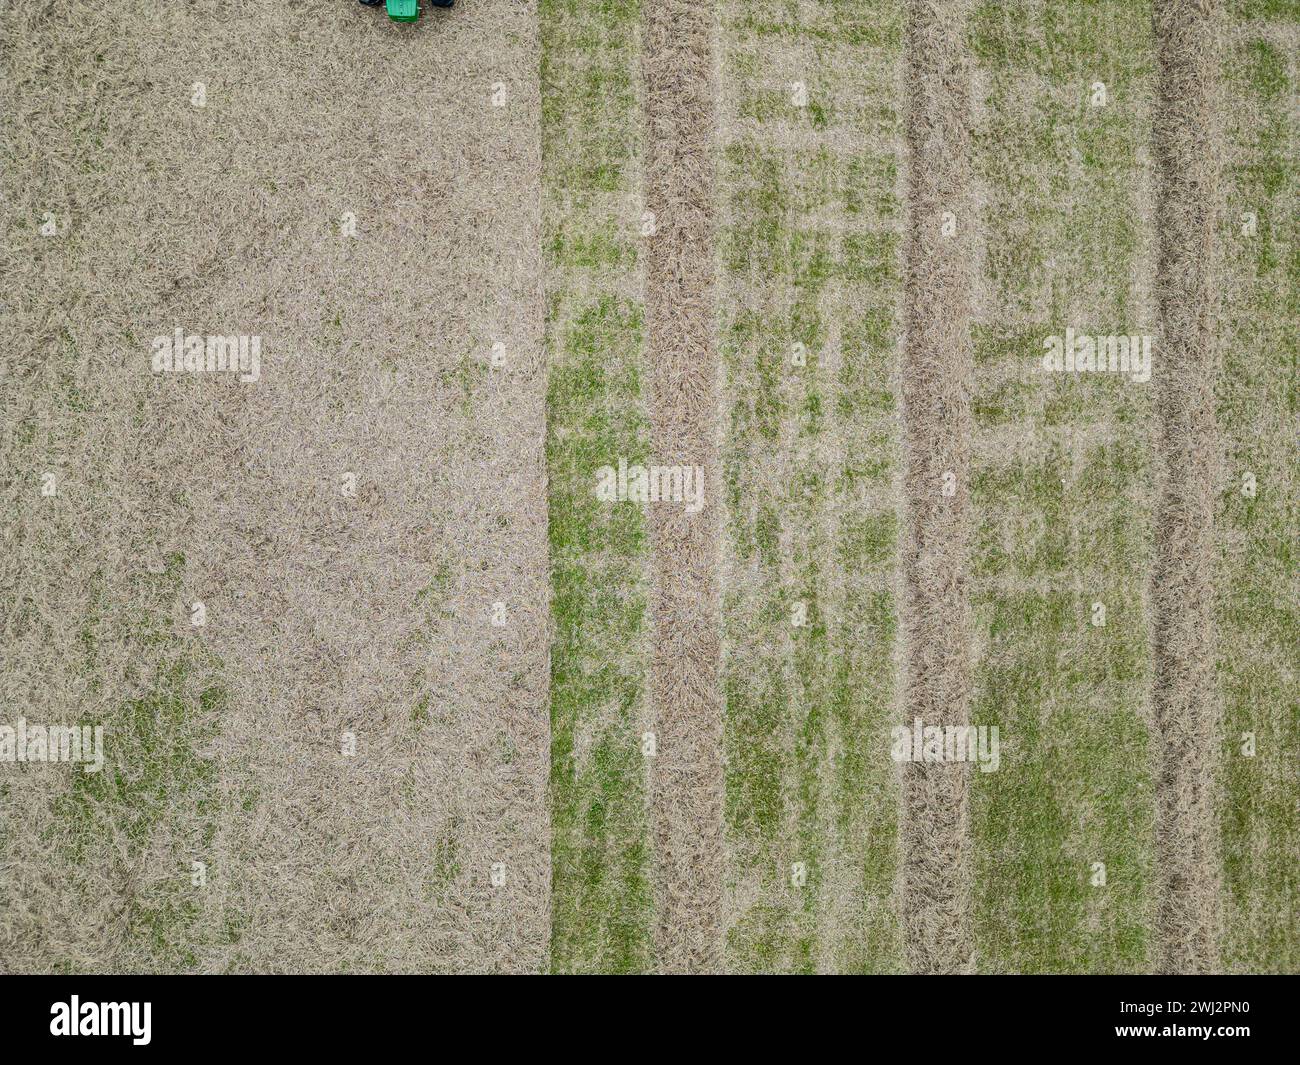 Agricoltura nel Regno Unito. Fotografia aerea di strisce in un campo erboso durante la formazione del fieno Foto Stock